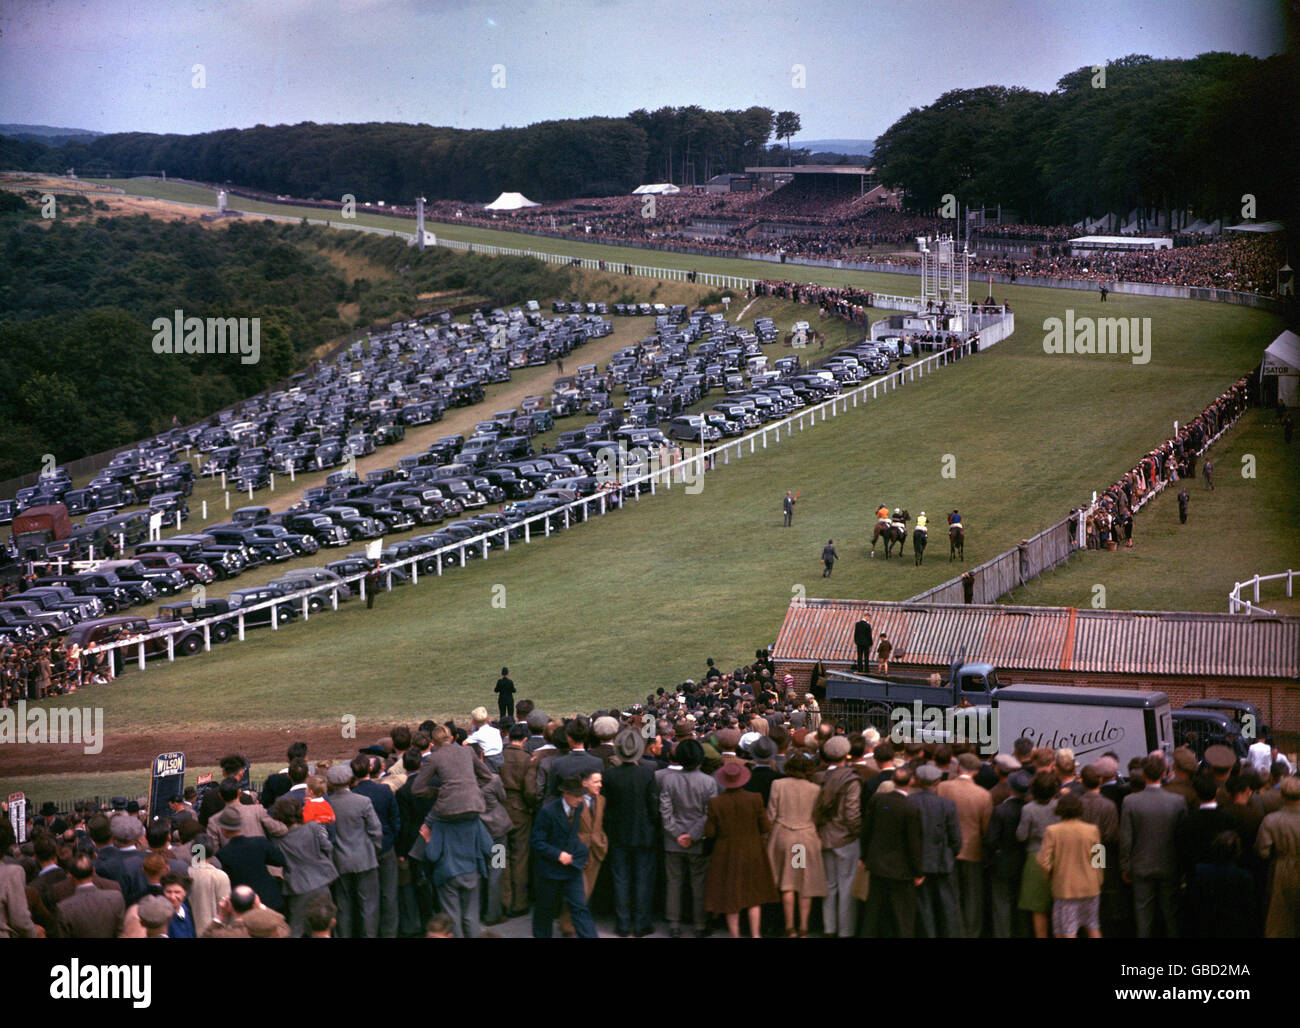 Horse Racing - Goodwood Cup - Goodwood Racecourse Foto Stock